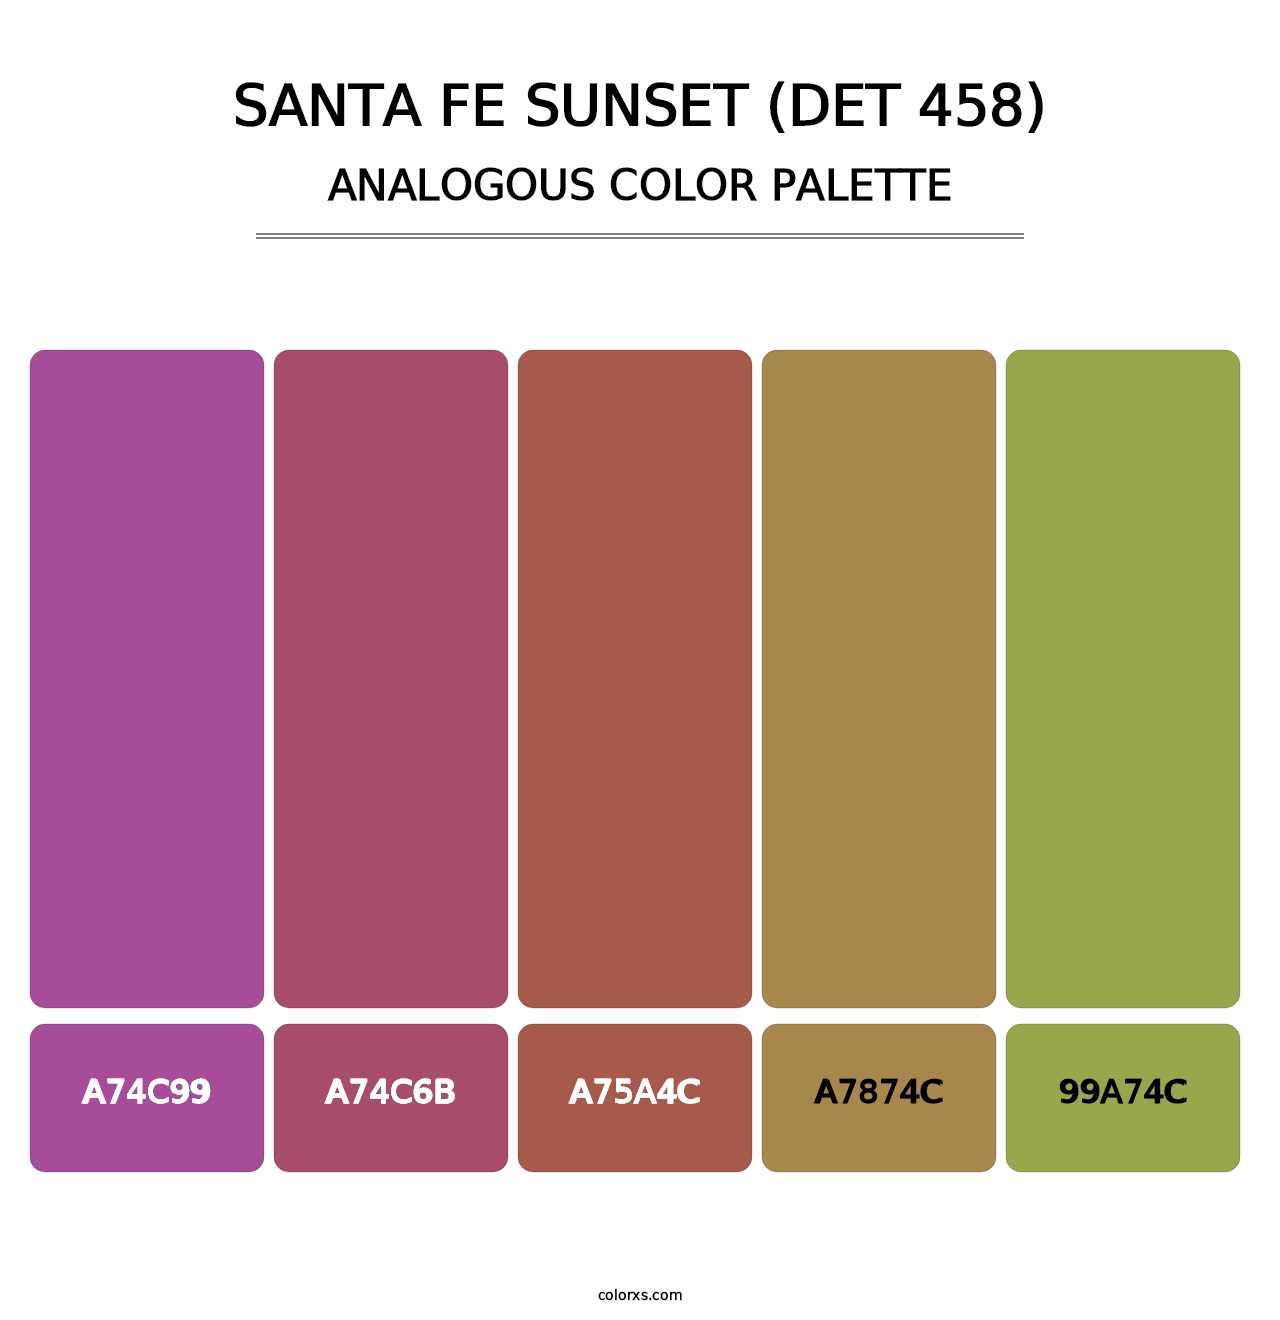 Santa Fe Sunset (DET 458) - Analogous Color Palette